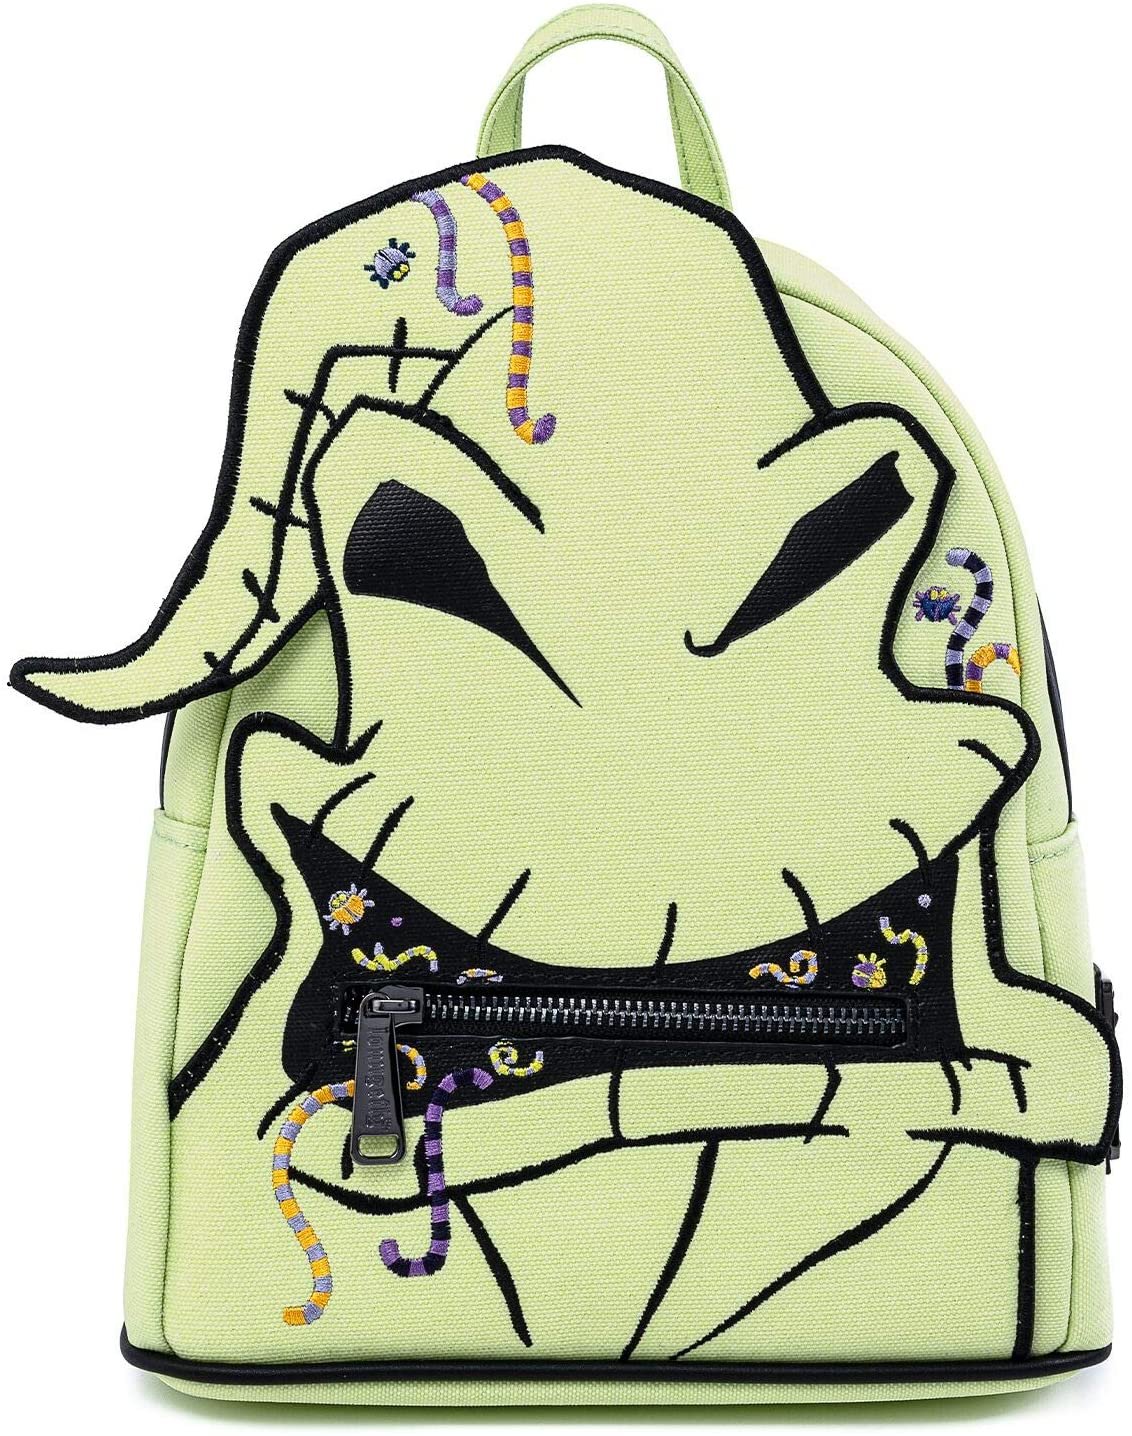 Disney Nightmare Before Christmas Oogie Boogie Creepy Crawlies Glow in the Dark Mini Backpack